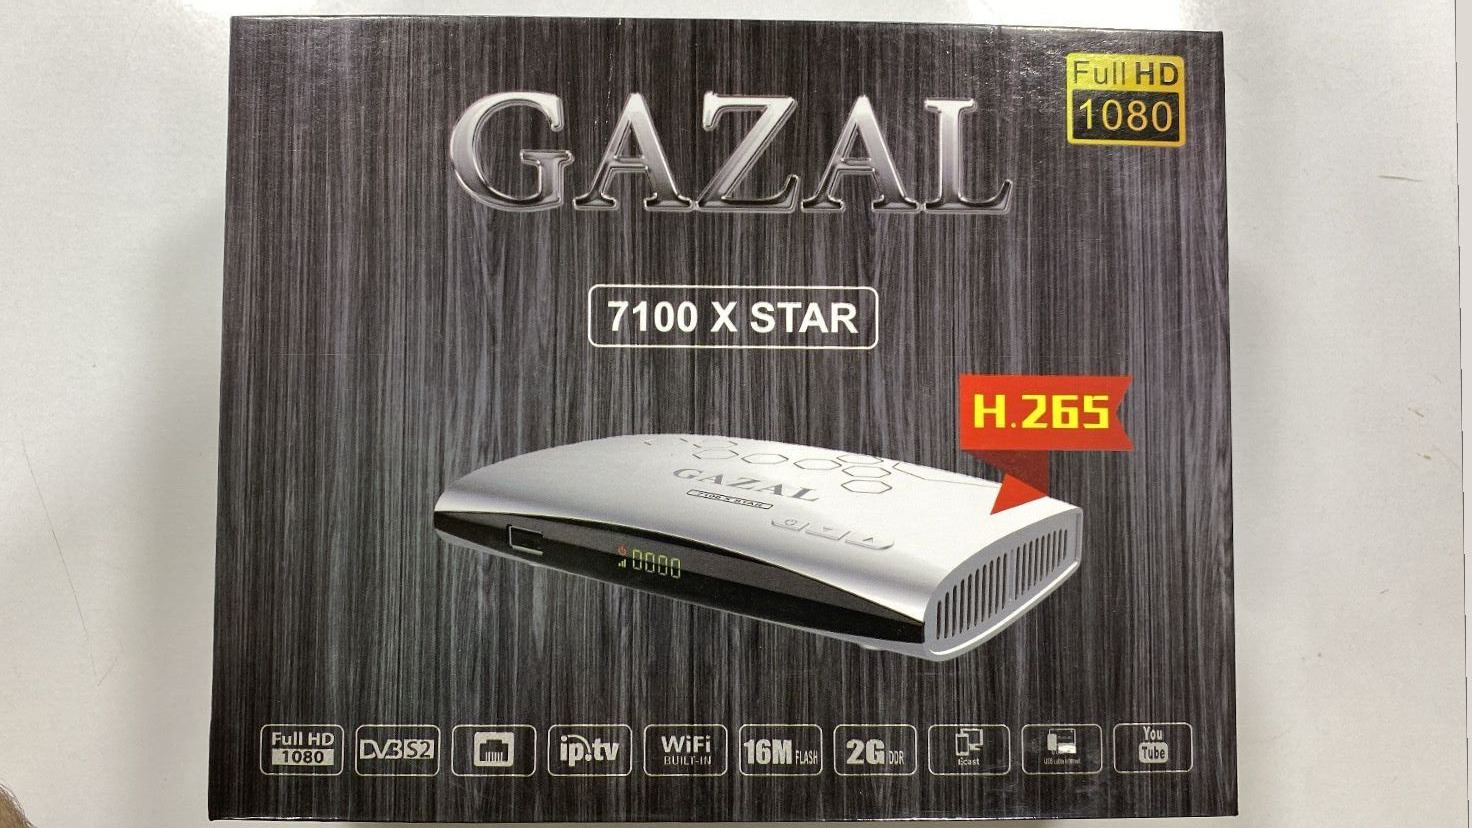 Gazal 7100 X Star Receive رسيفر غزال